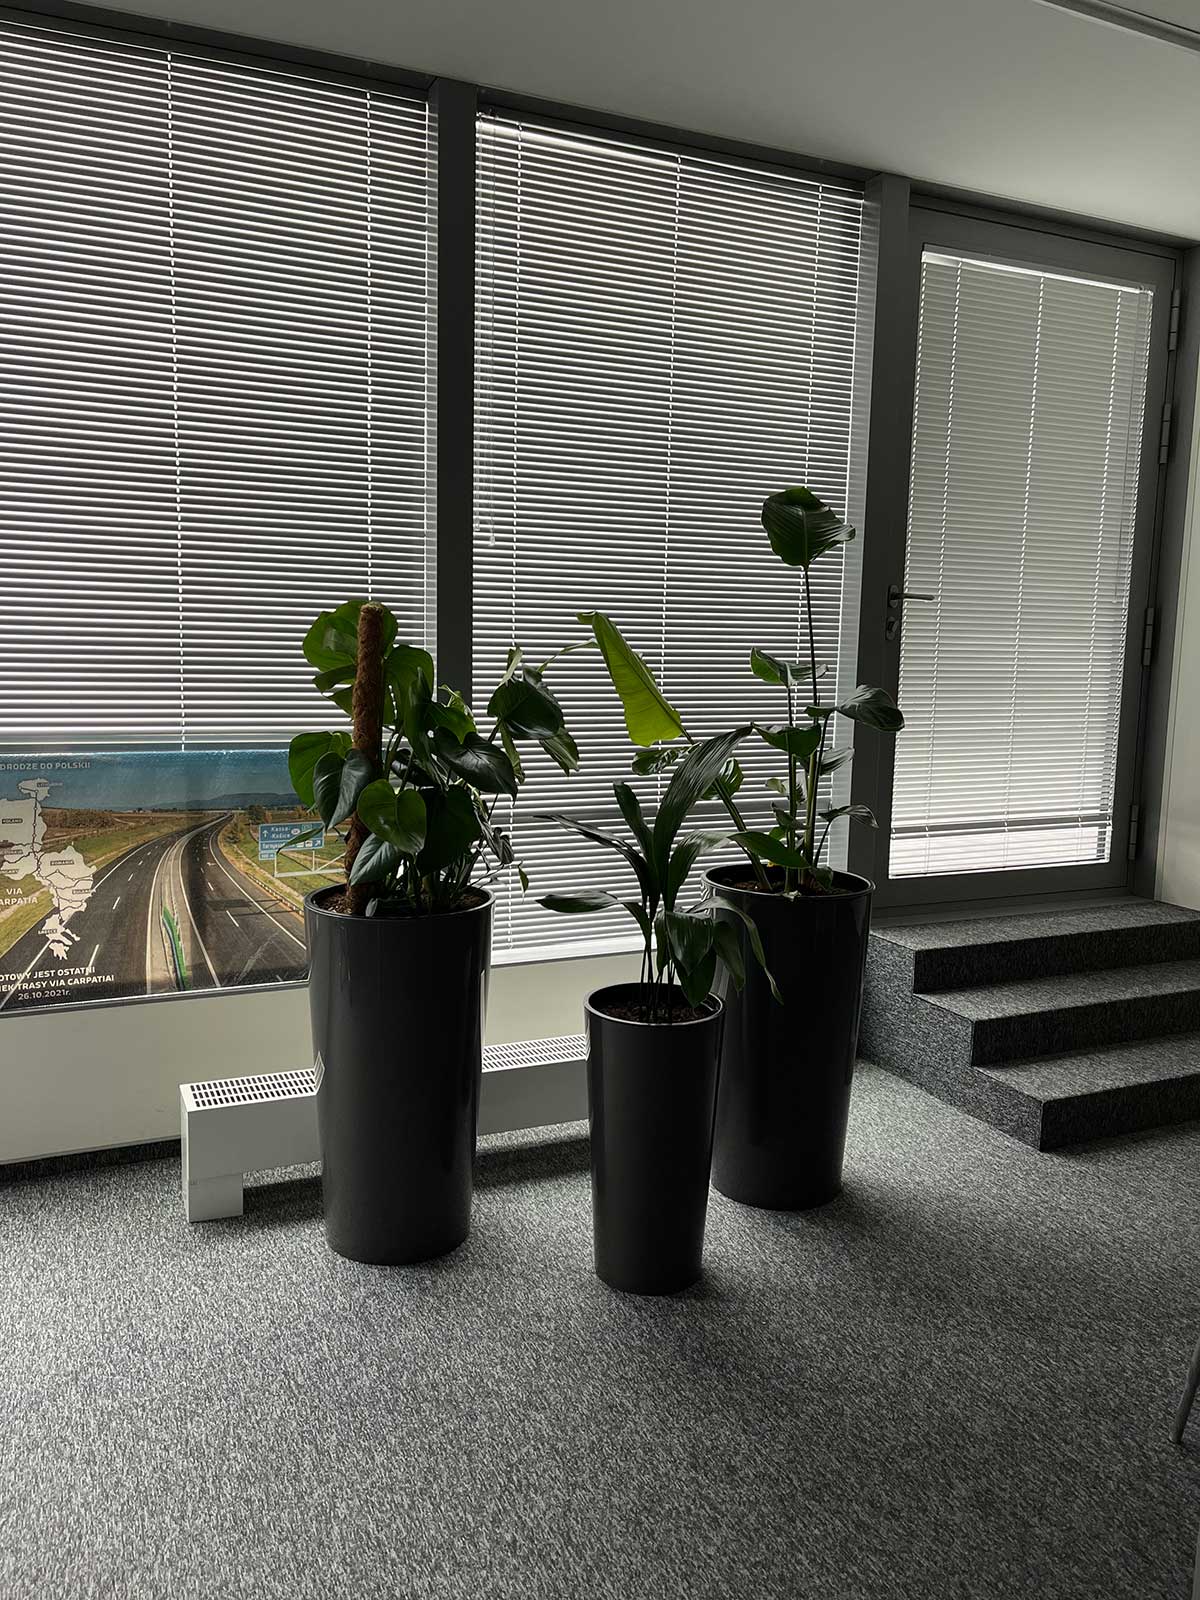 Trzy rośliny doniczkowe przed oknem w biurze, otoczone tytułami Booksy.